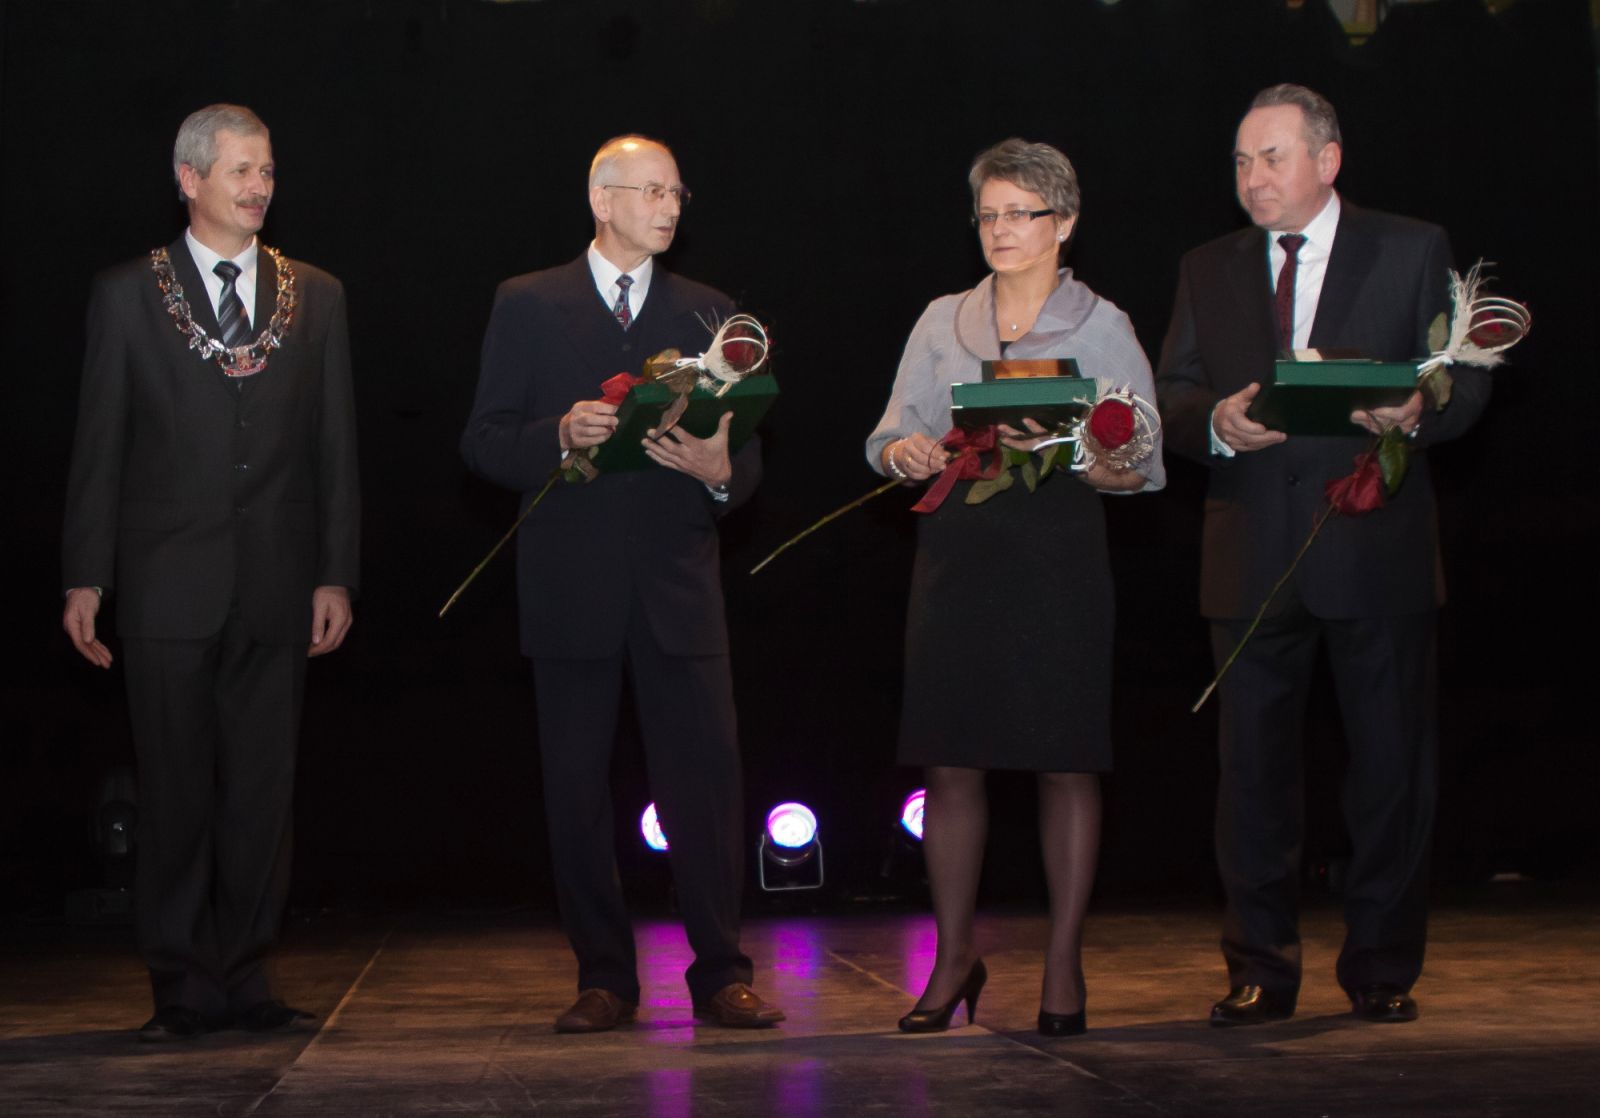 Od lewej: Piotr Downar, Lechosław Kaczmarek, Małgorzata Lenkiewicz, Edward Korzeniowski